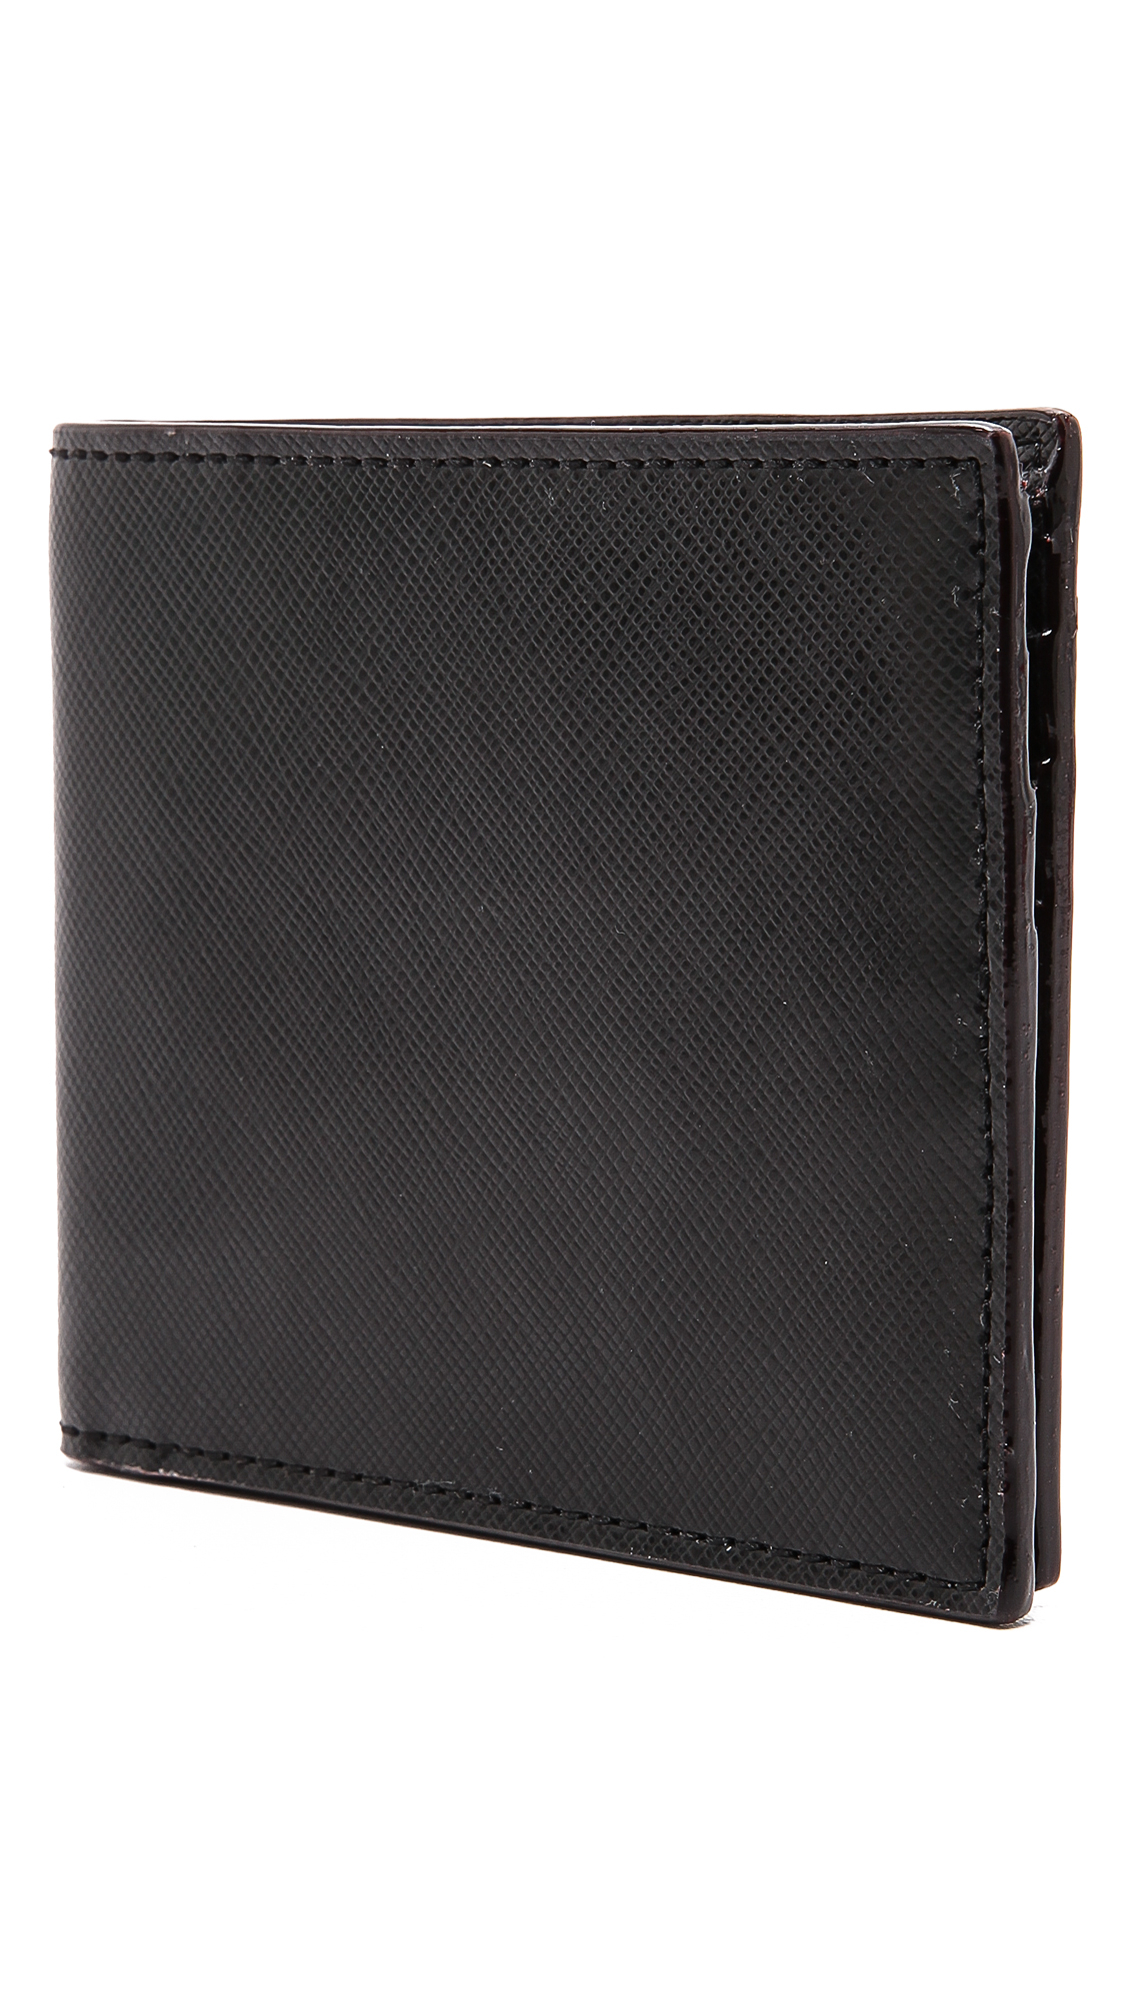 Jack Spade Wesson Leather Wallet in Black for Men